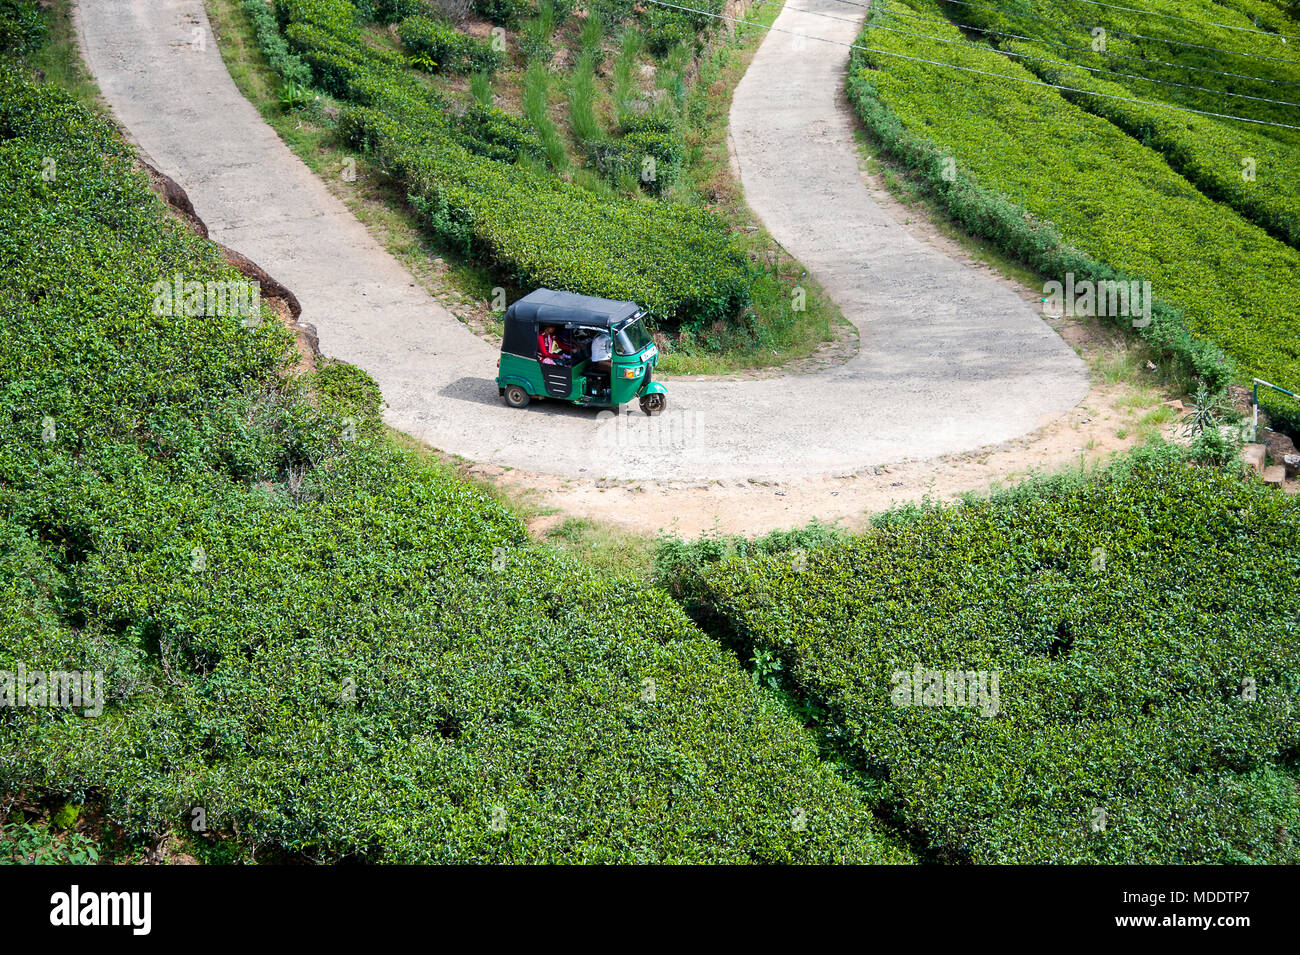 Vue aérienne de Taxi Tuktuk sur une plantation de thé, près de Nuwara Eliya, Sri Lanka, une route sinueuse qui serpente à travers un paysage verdoyant Banque D'Images